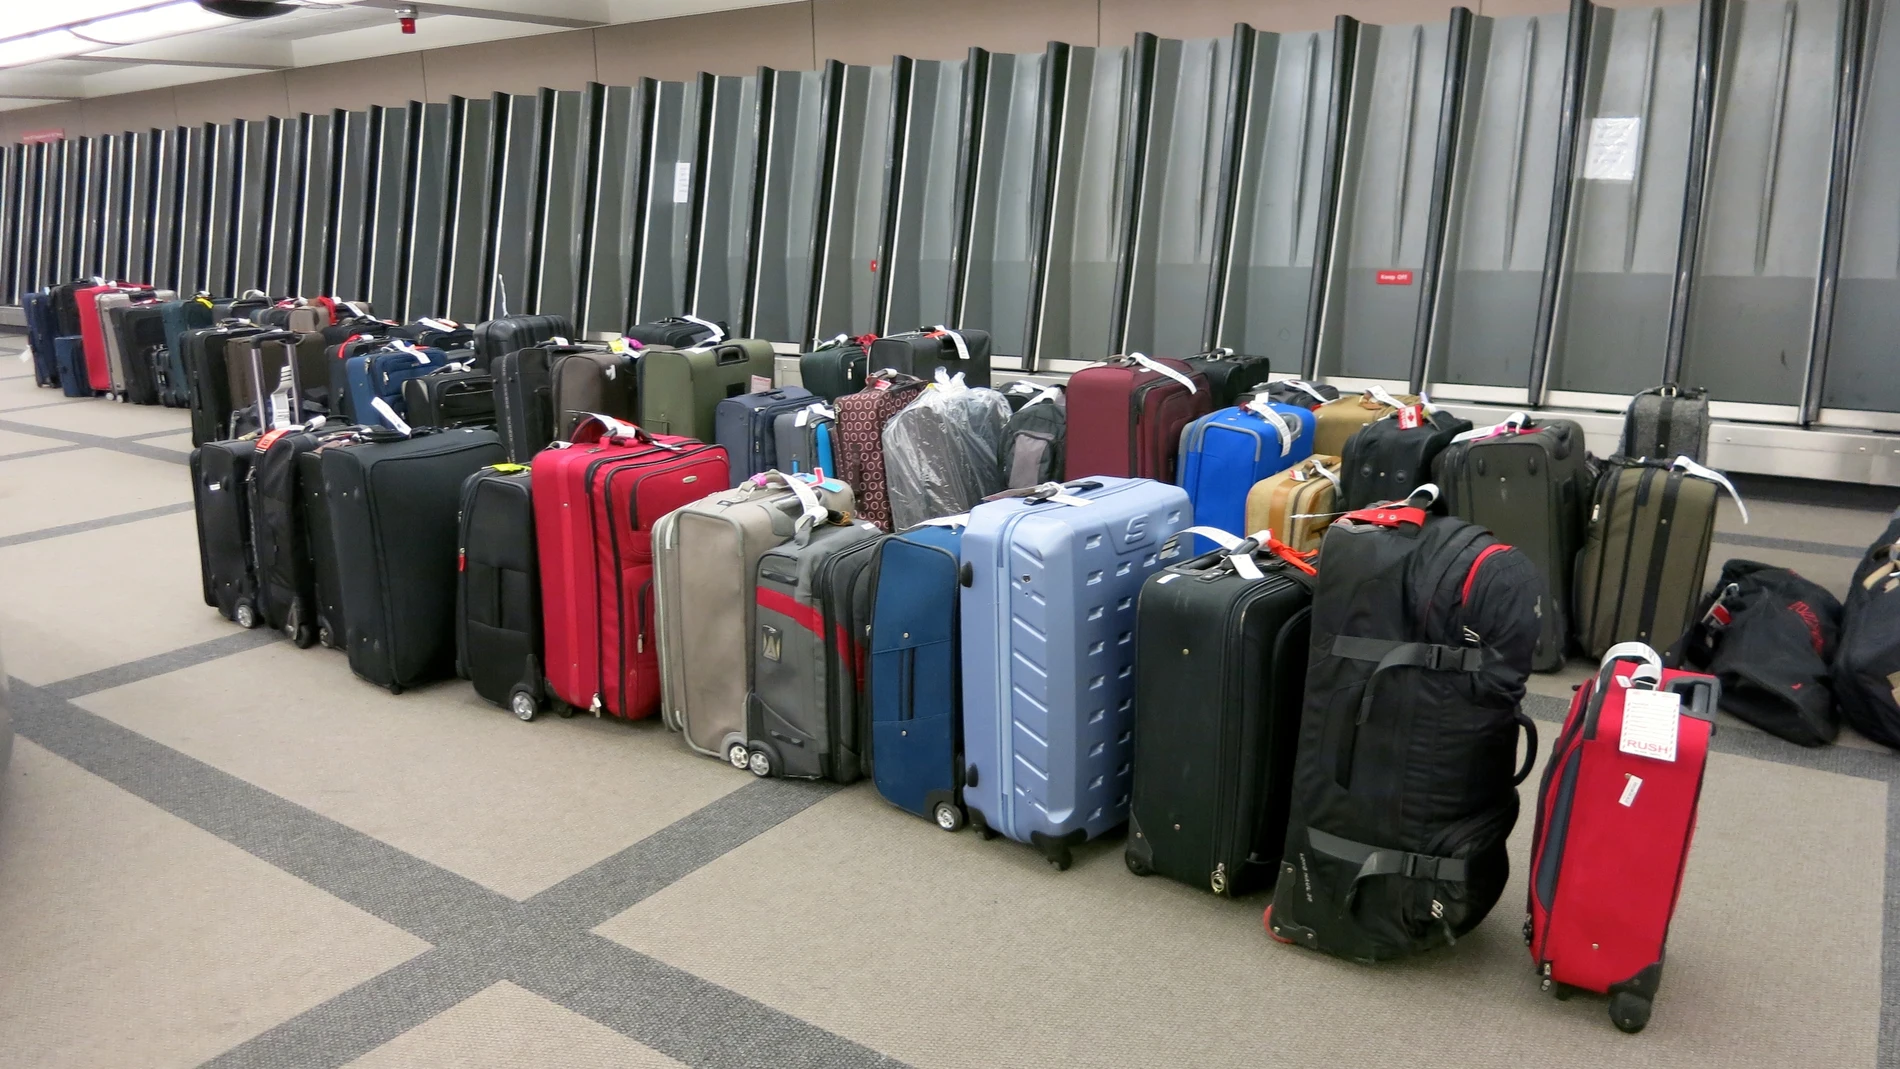 Cuál es el mejor equipaje de mano para viajar en avión? —